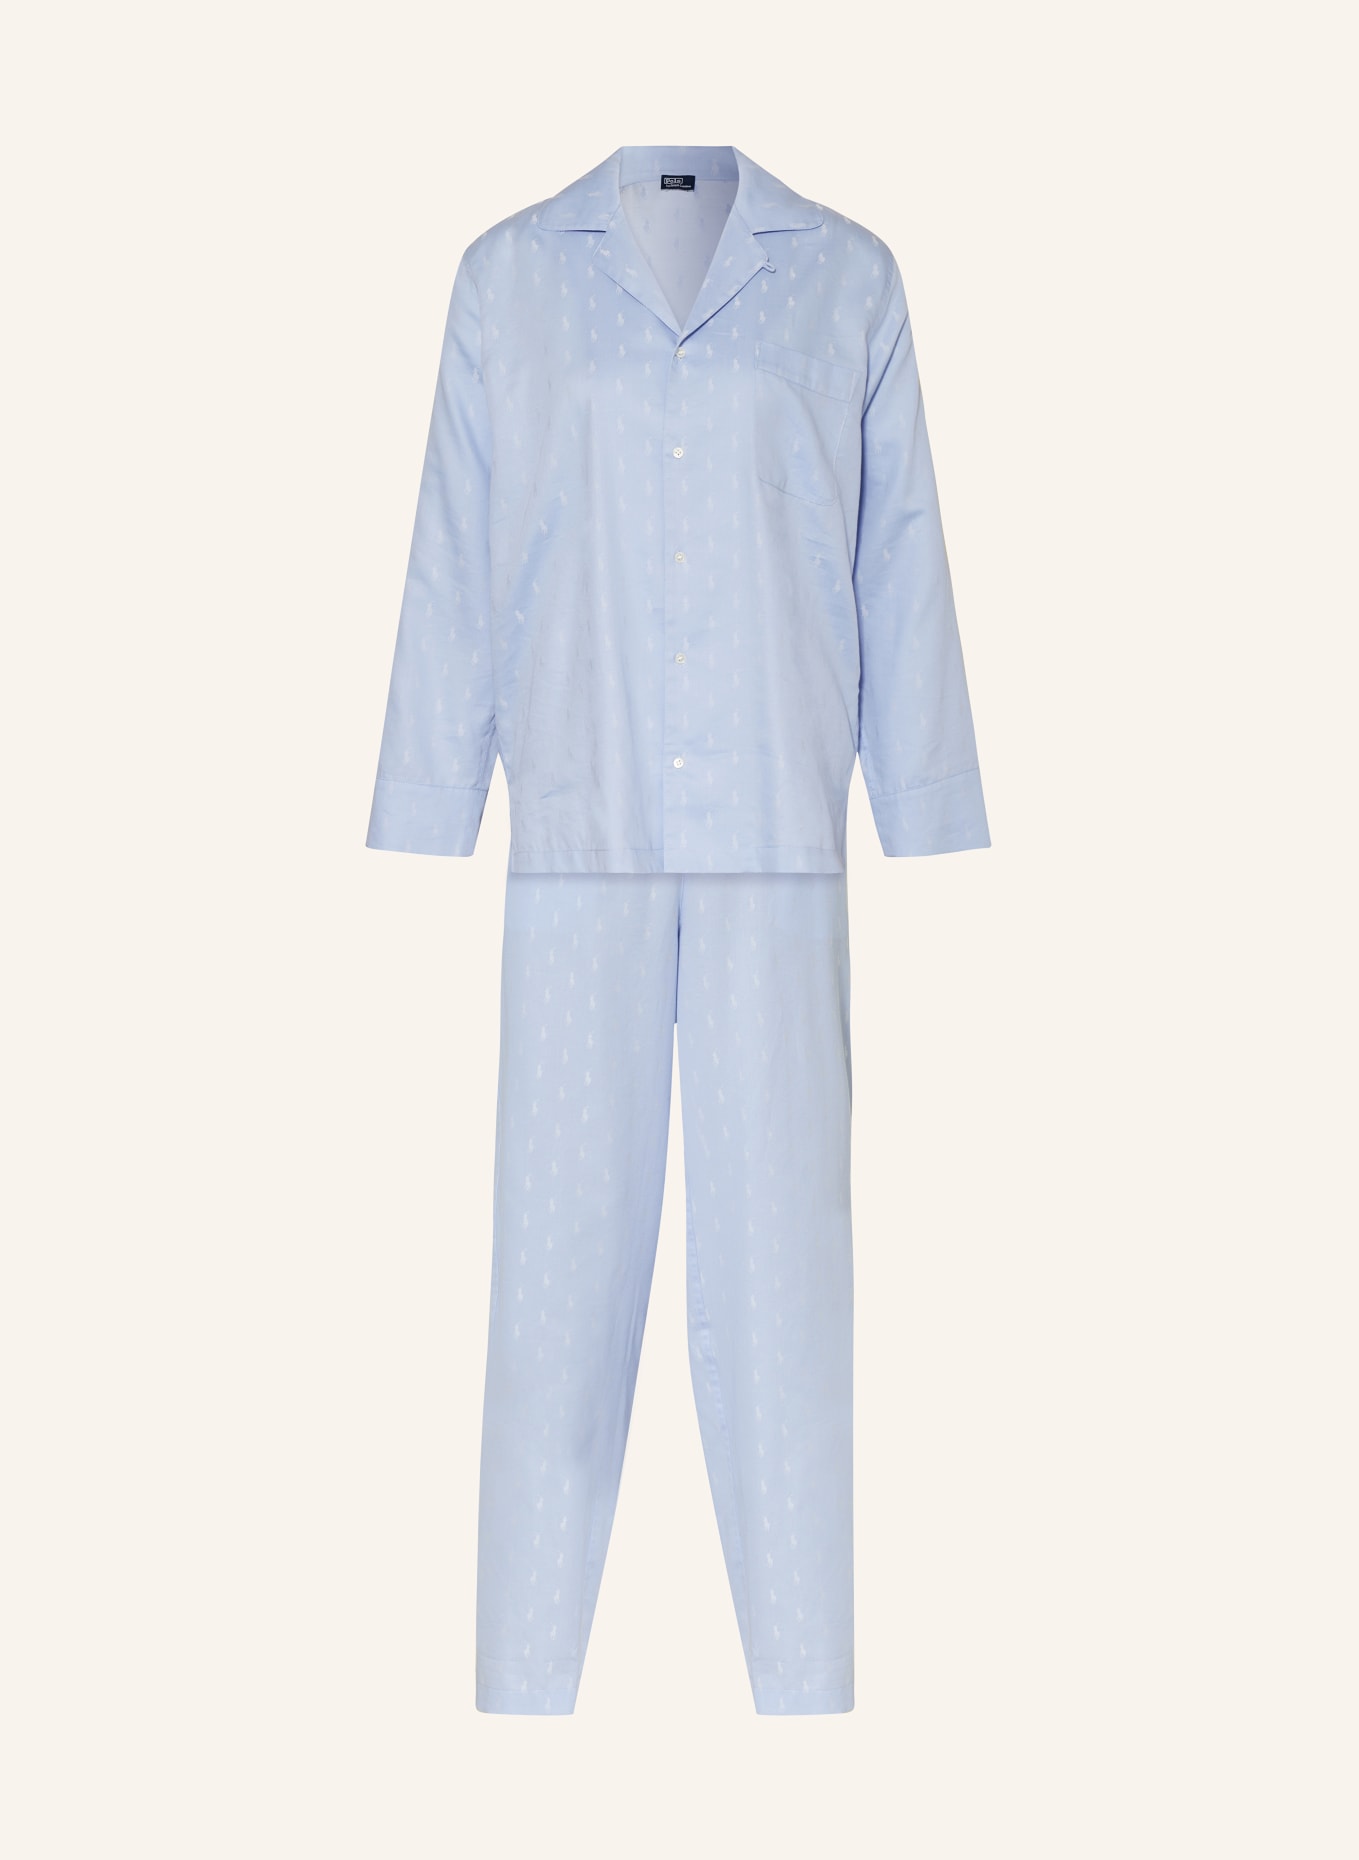 POLO RALPH LAUREN Pajamas, Color: LIGHT BLUE (Image 1)